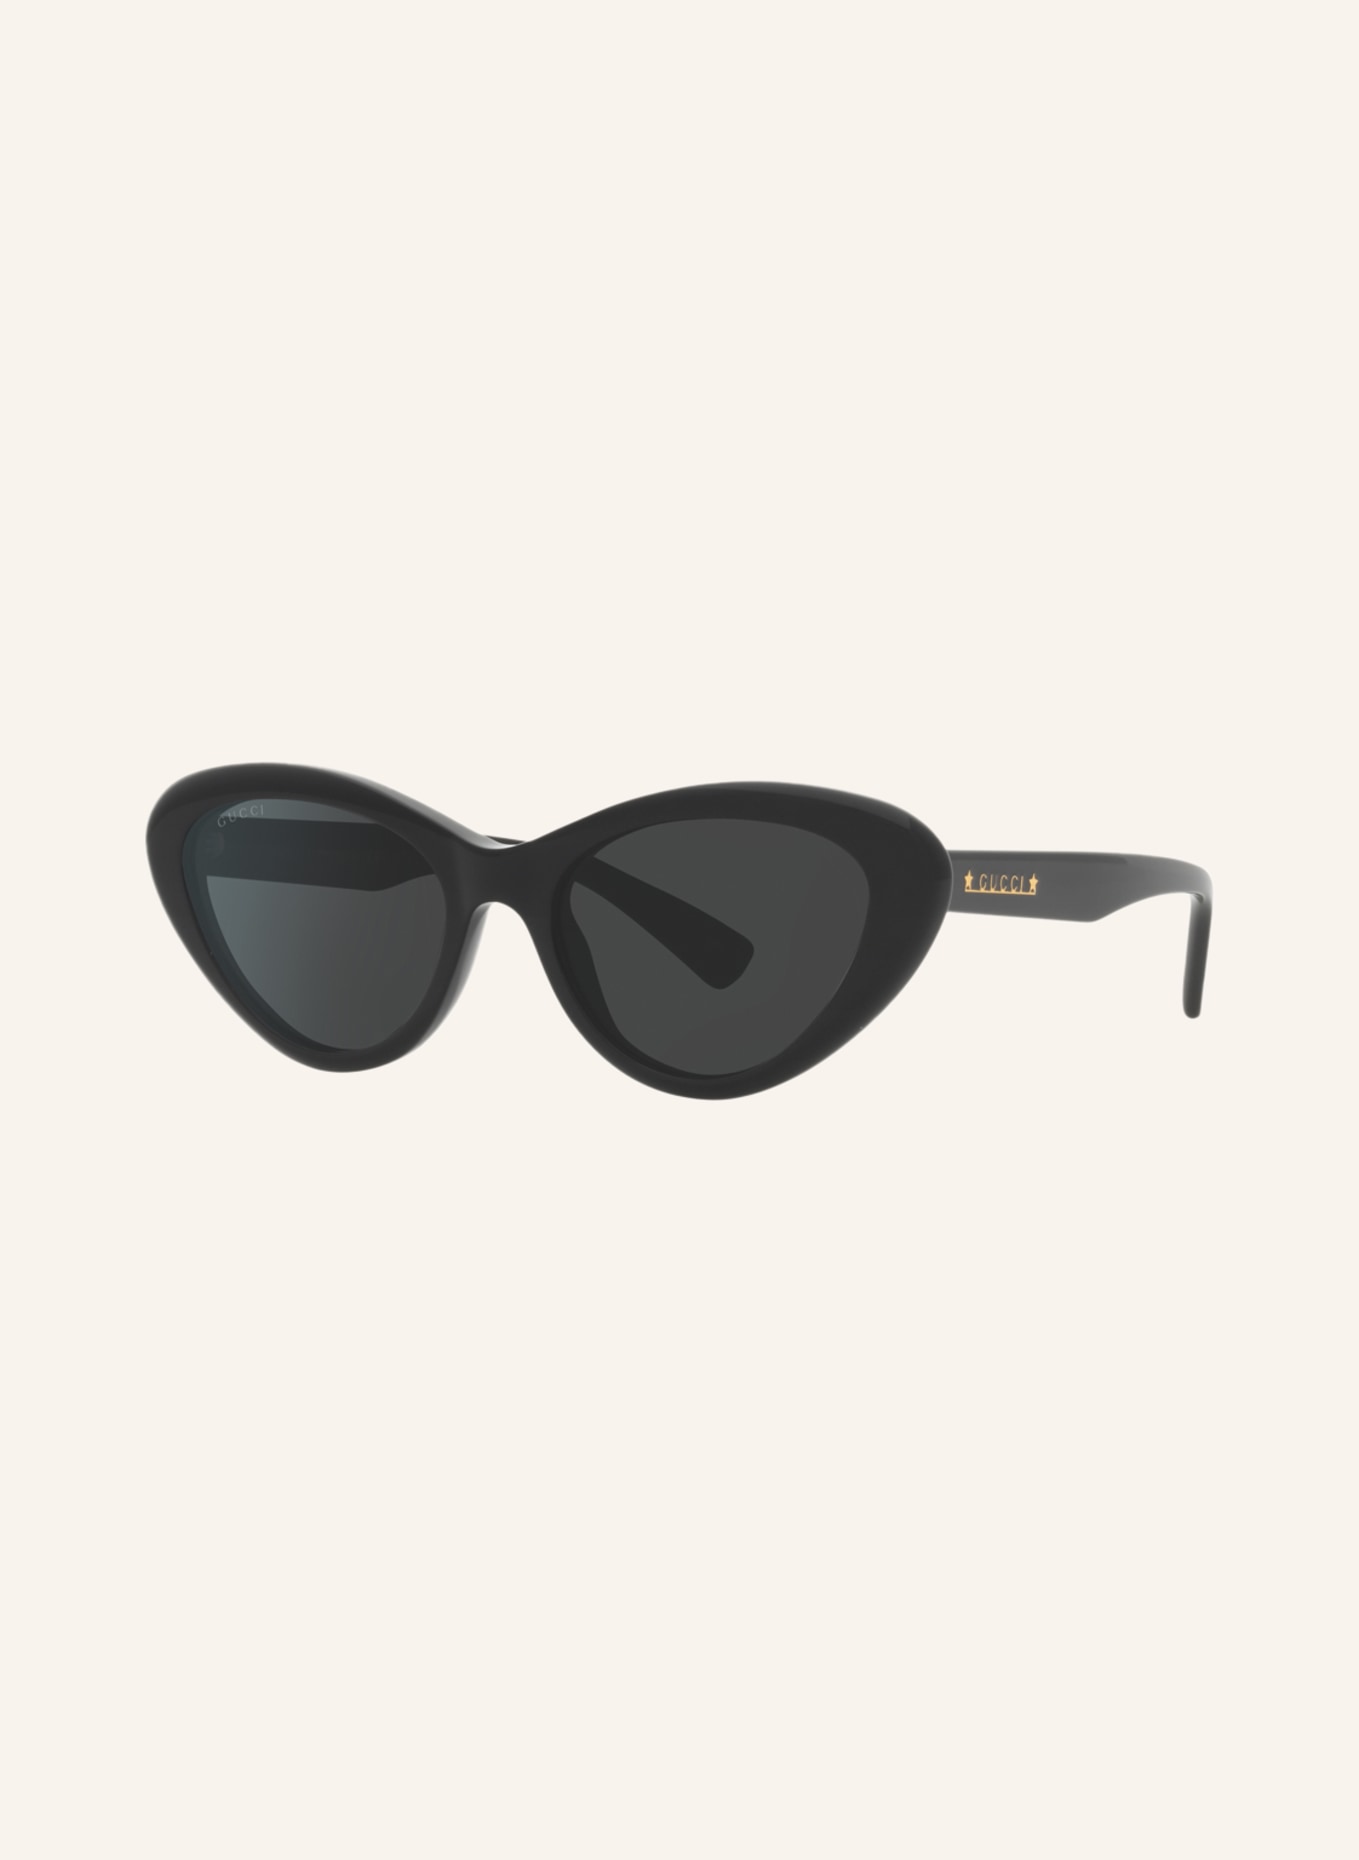 GUCCI Sunglasses GG1170S, Color: 1100L1 - BLACK/DARK GRAY (Image 1)